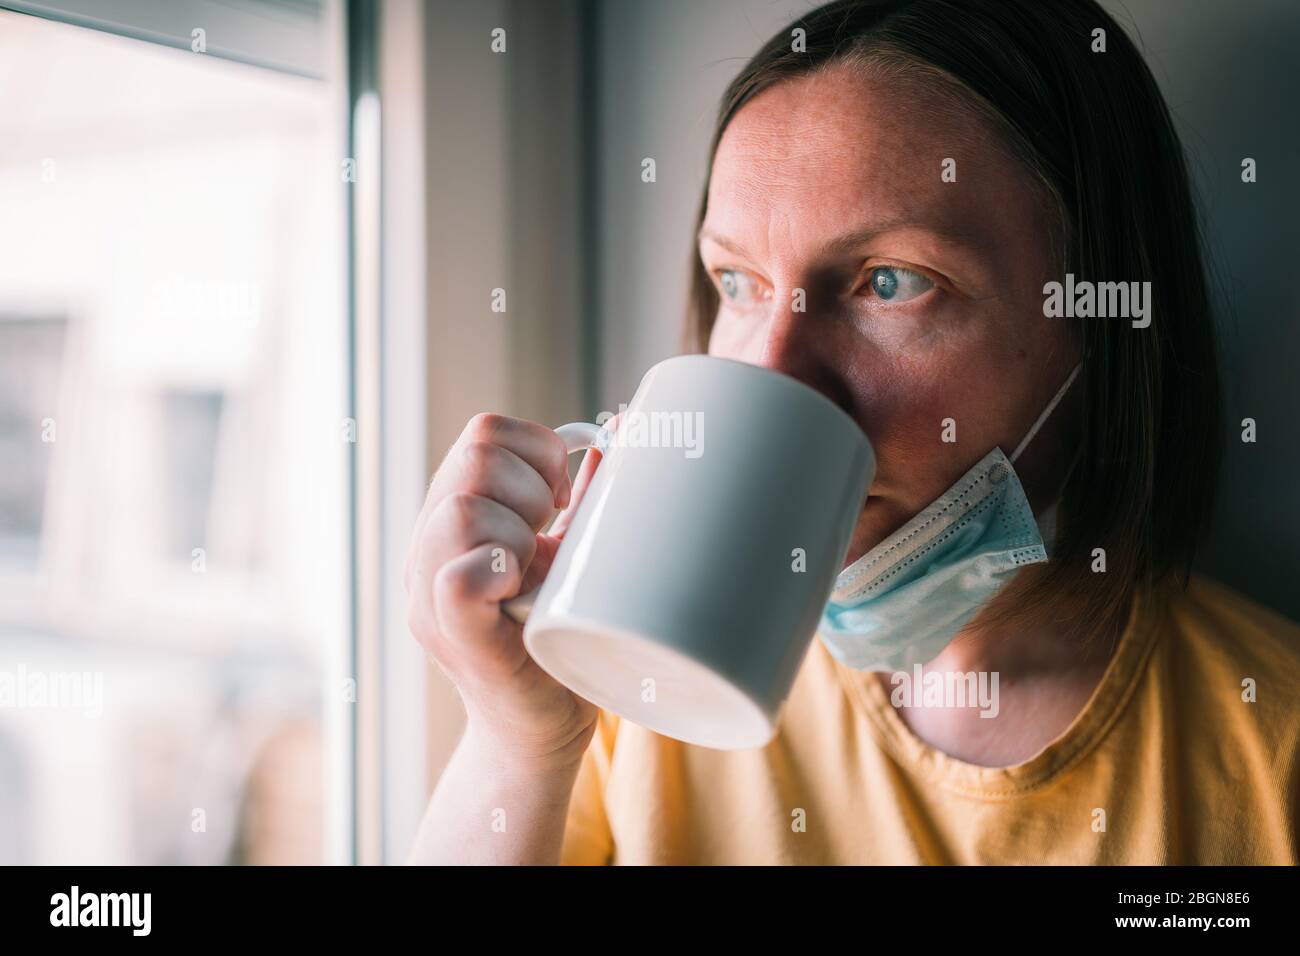 Donna in auto-isolamento durante l'epidemia di virus bere caffè e guardare attraverso la finestra. Donna preoccupata con maschera chirurgica protettiva. Foto Stock